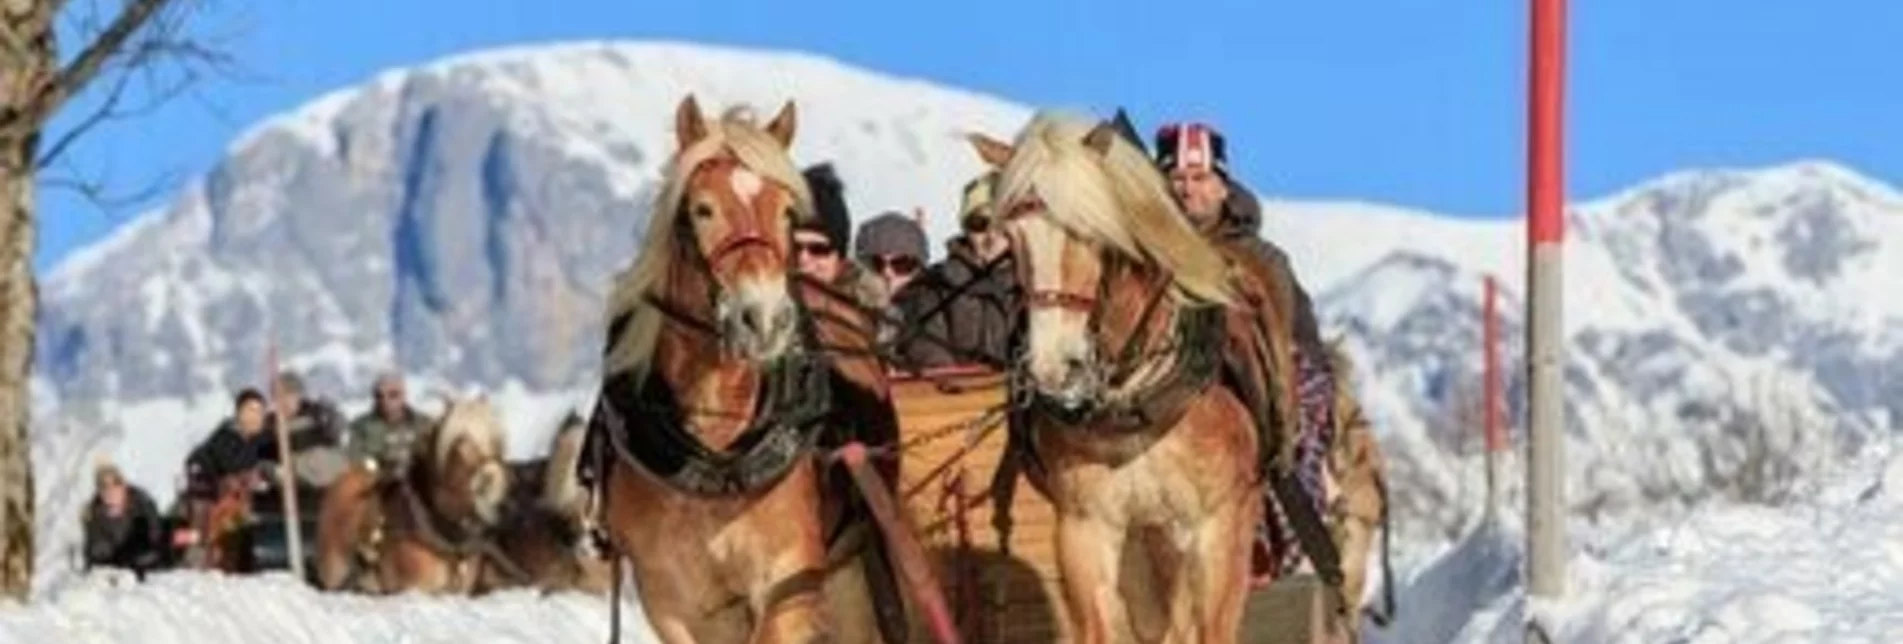 Horse Carriage Ride Horse-drawn sleigh ride Vom Reiter - Touren-Impression #1